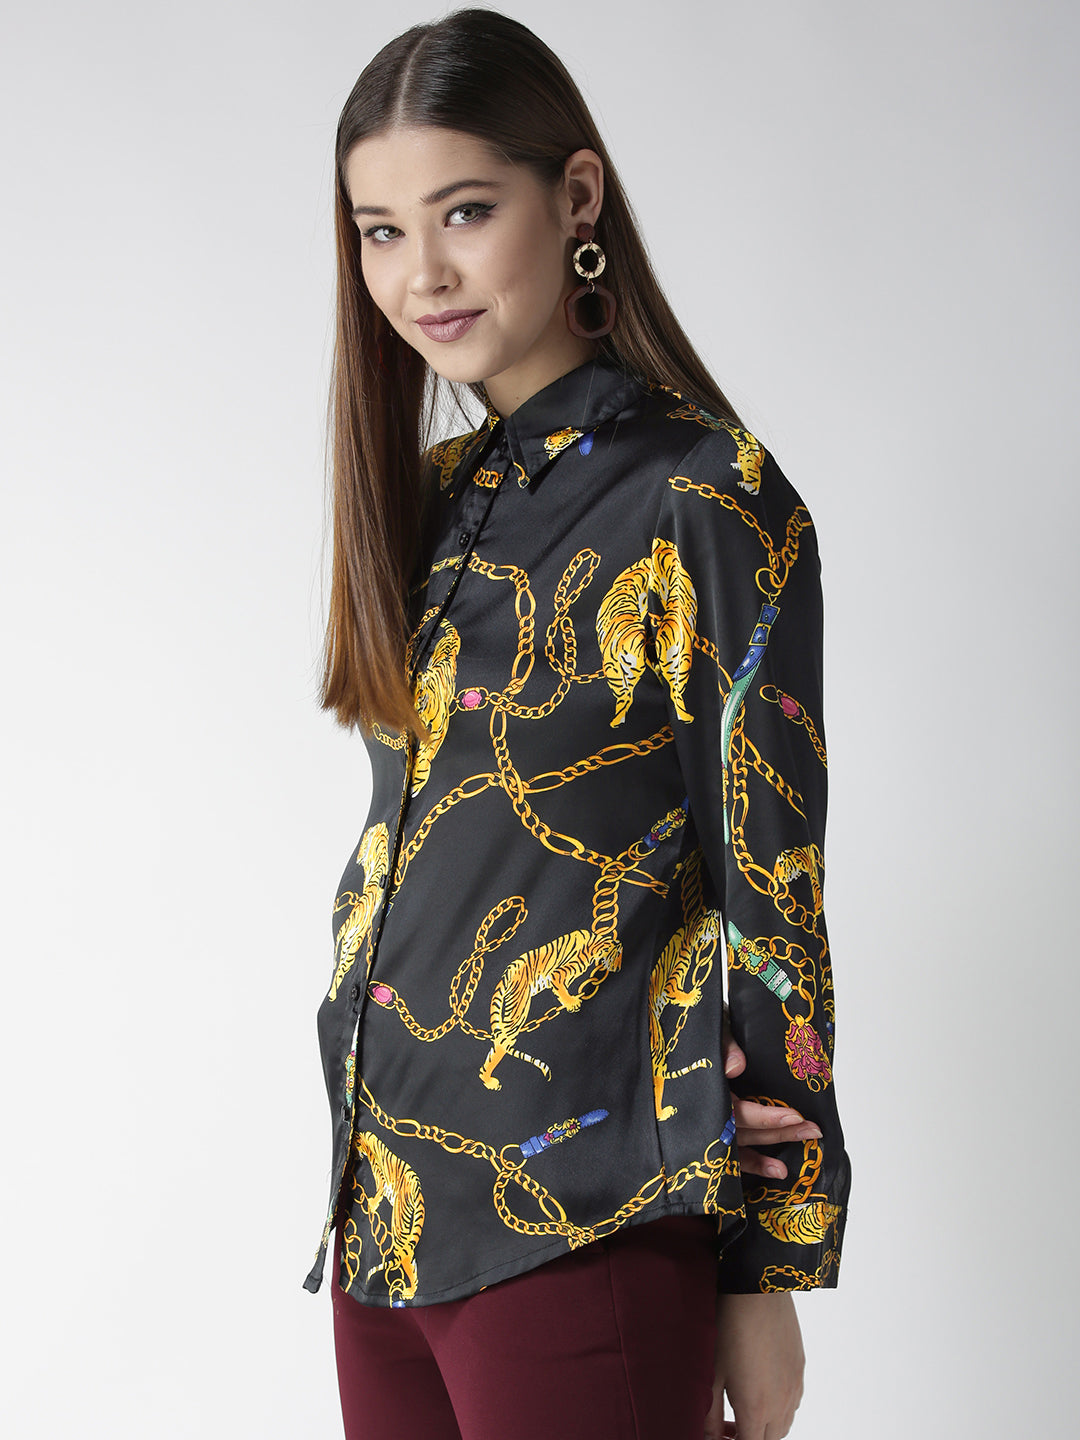 Women's Black and Golden Animal Chain Print Shirt - StyleStone